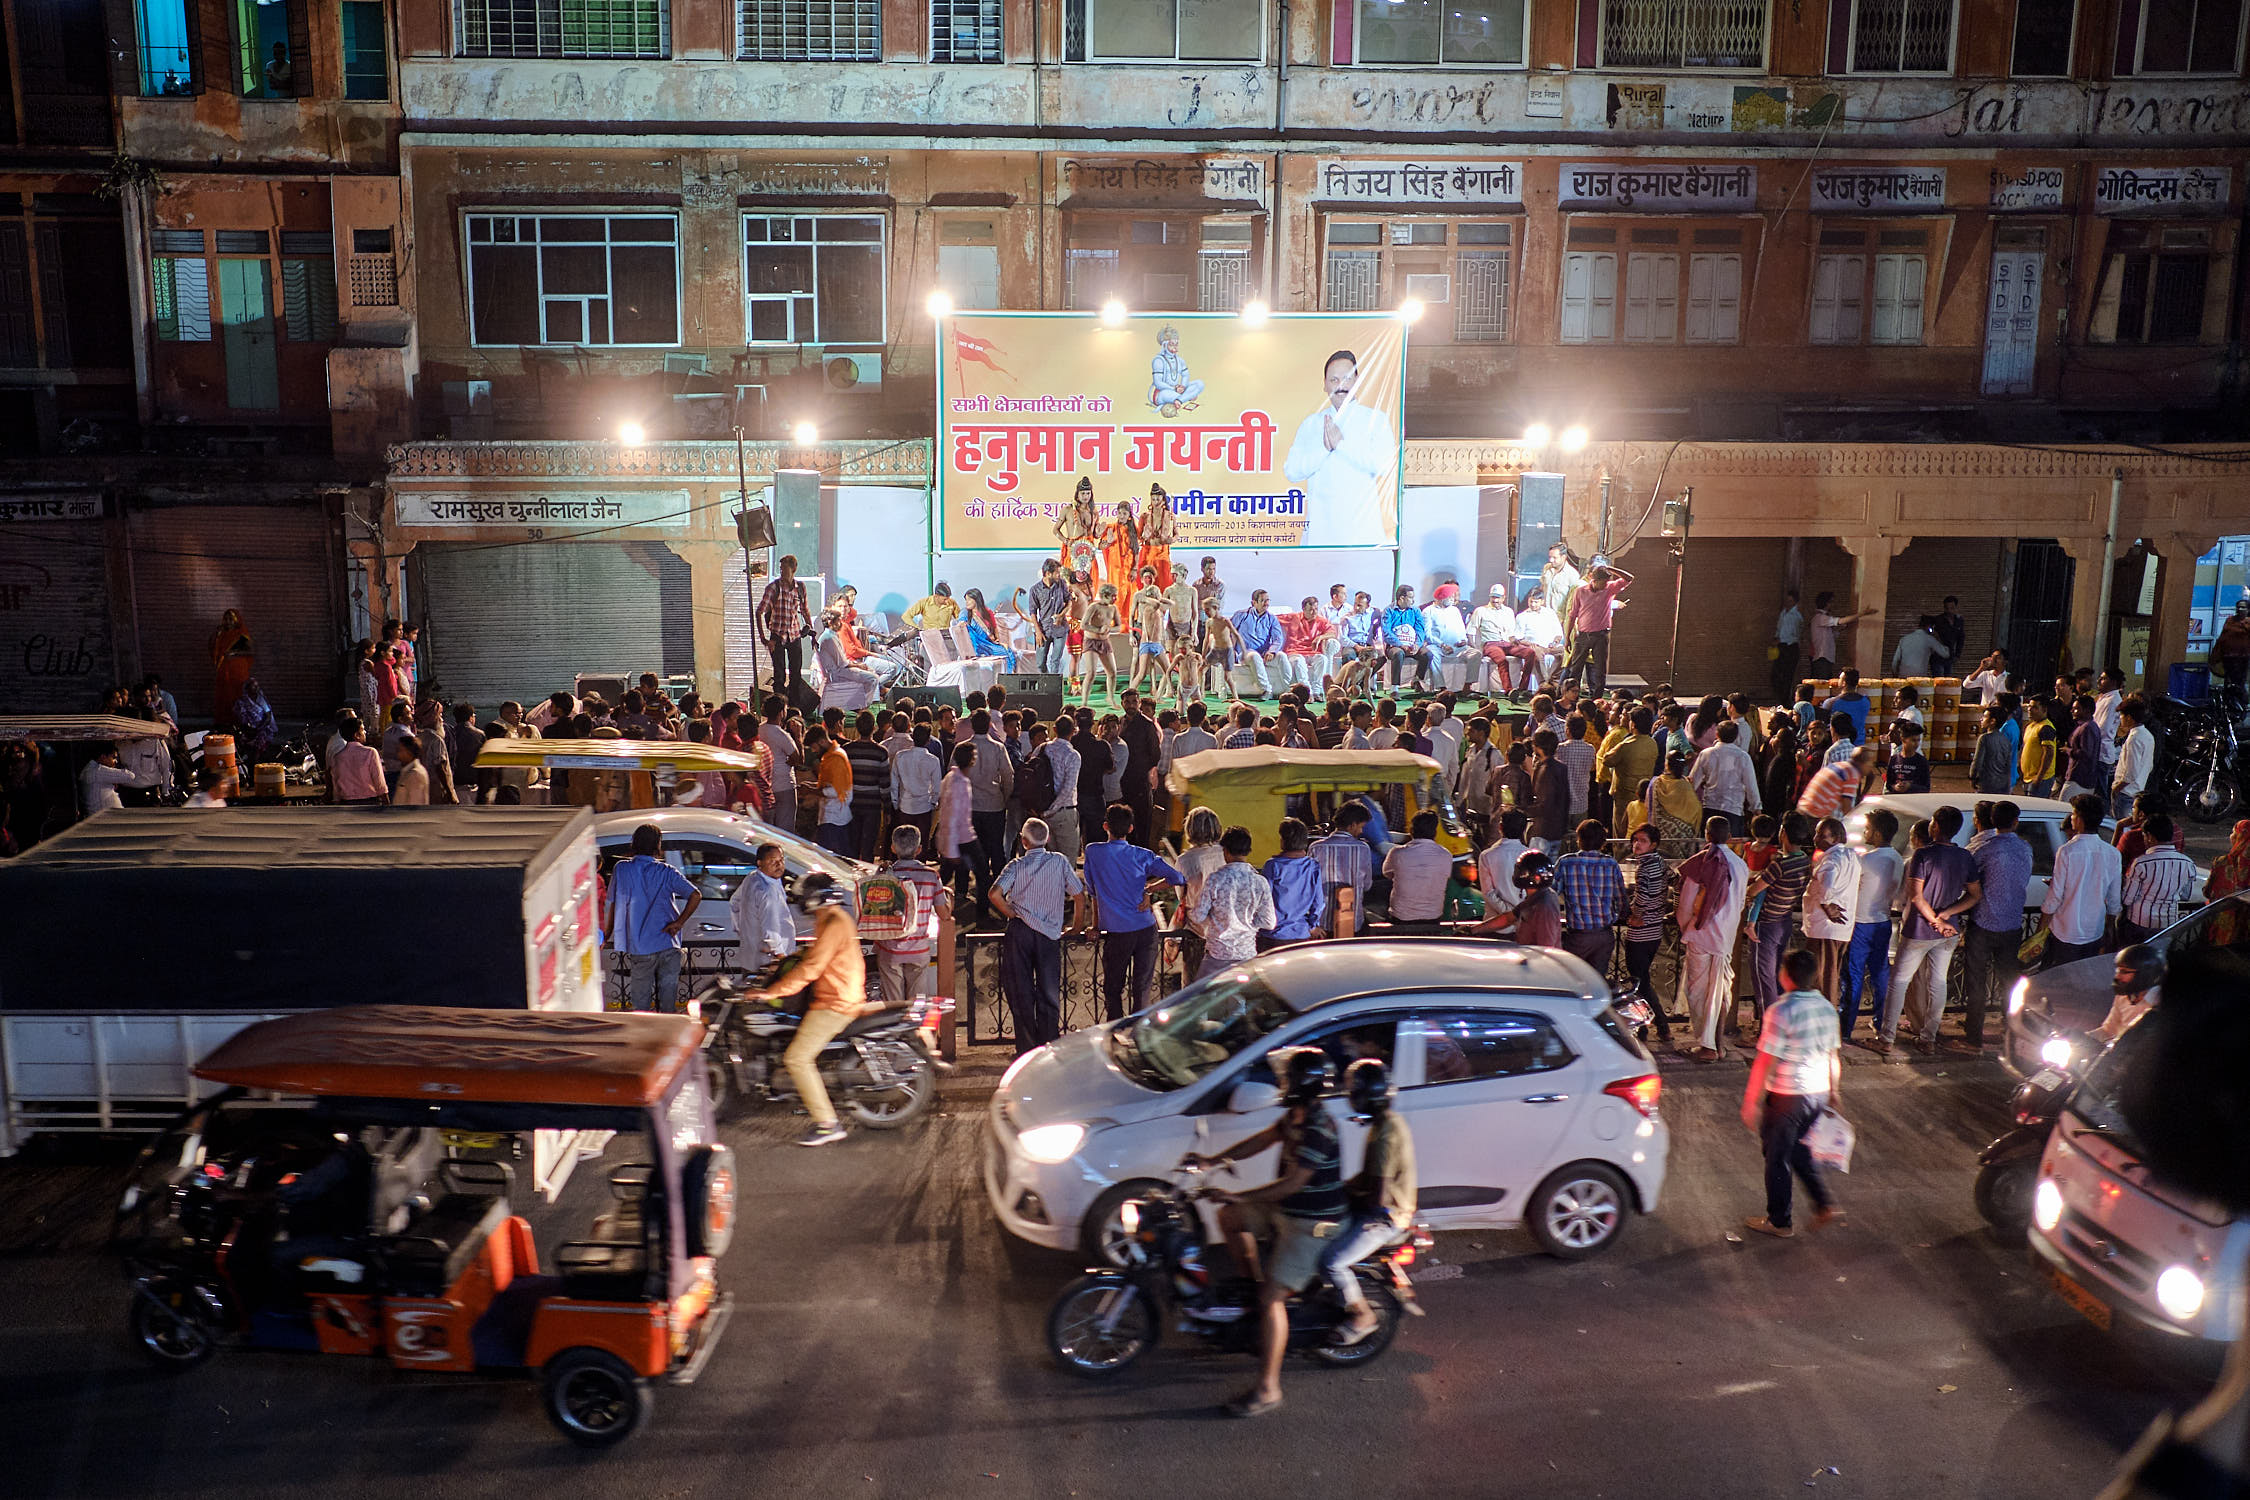 Celebration on the street of Jaipur, India